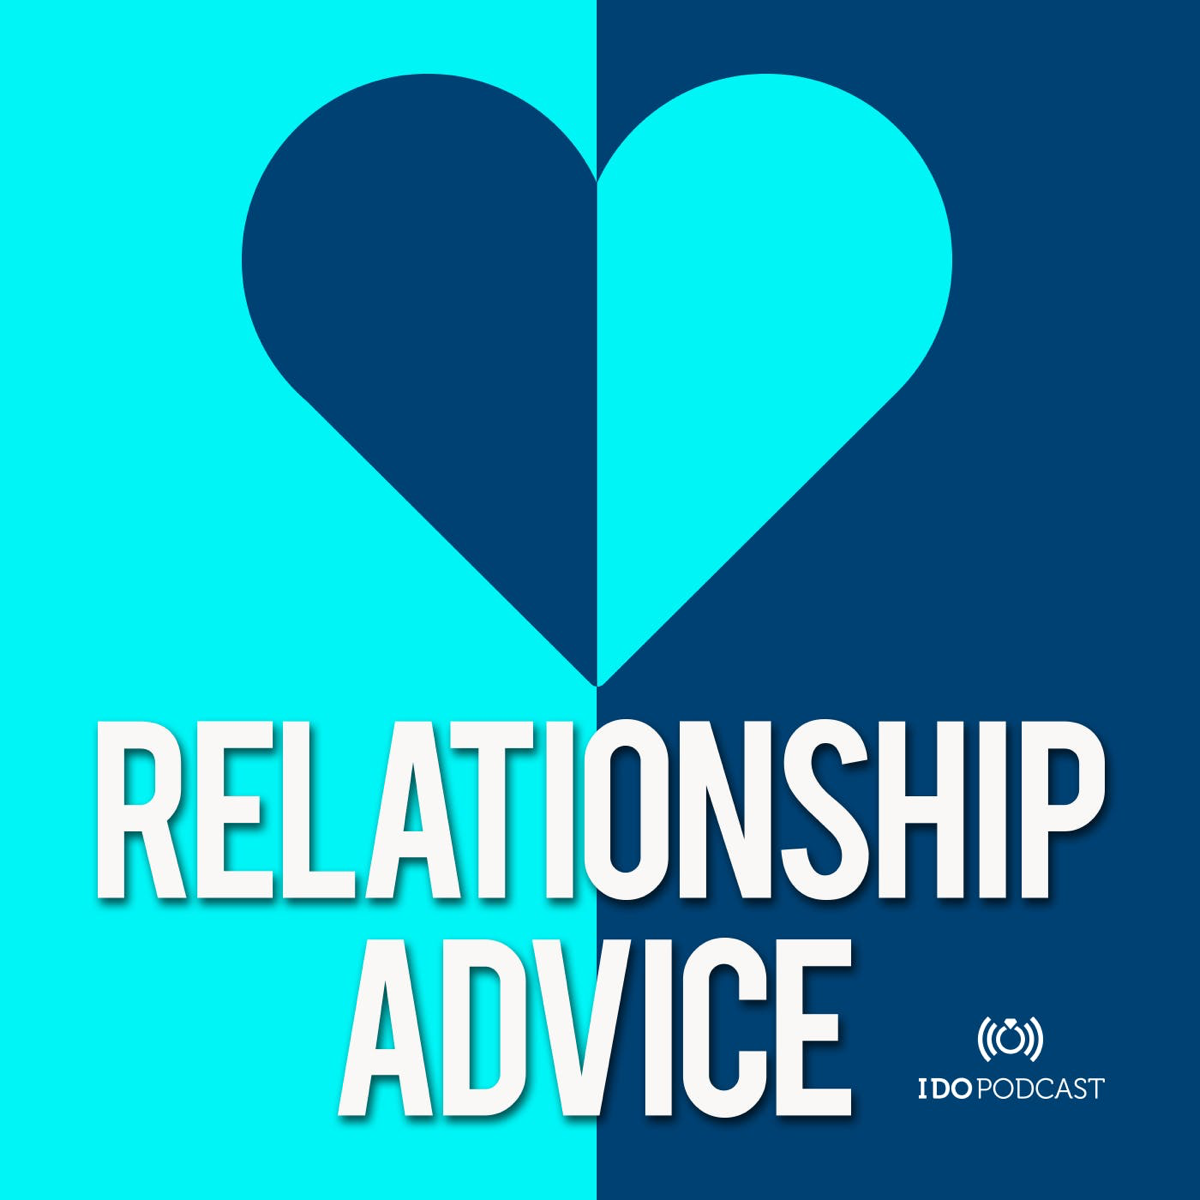 Dating advice for Lex Fridman 